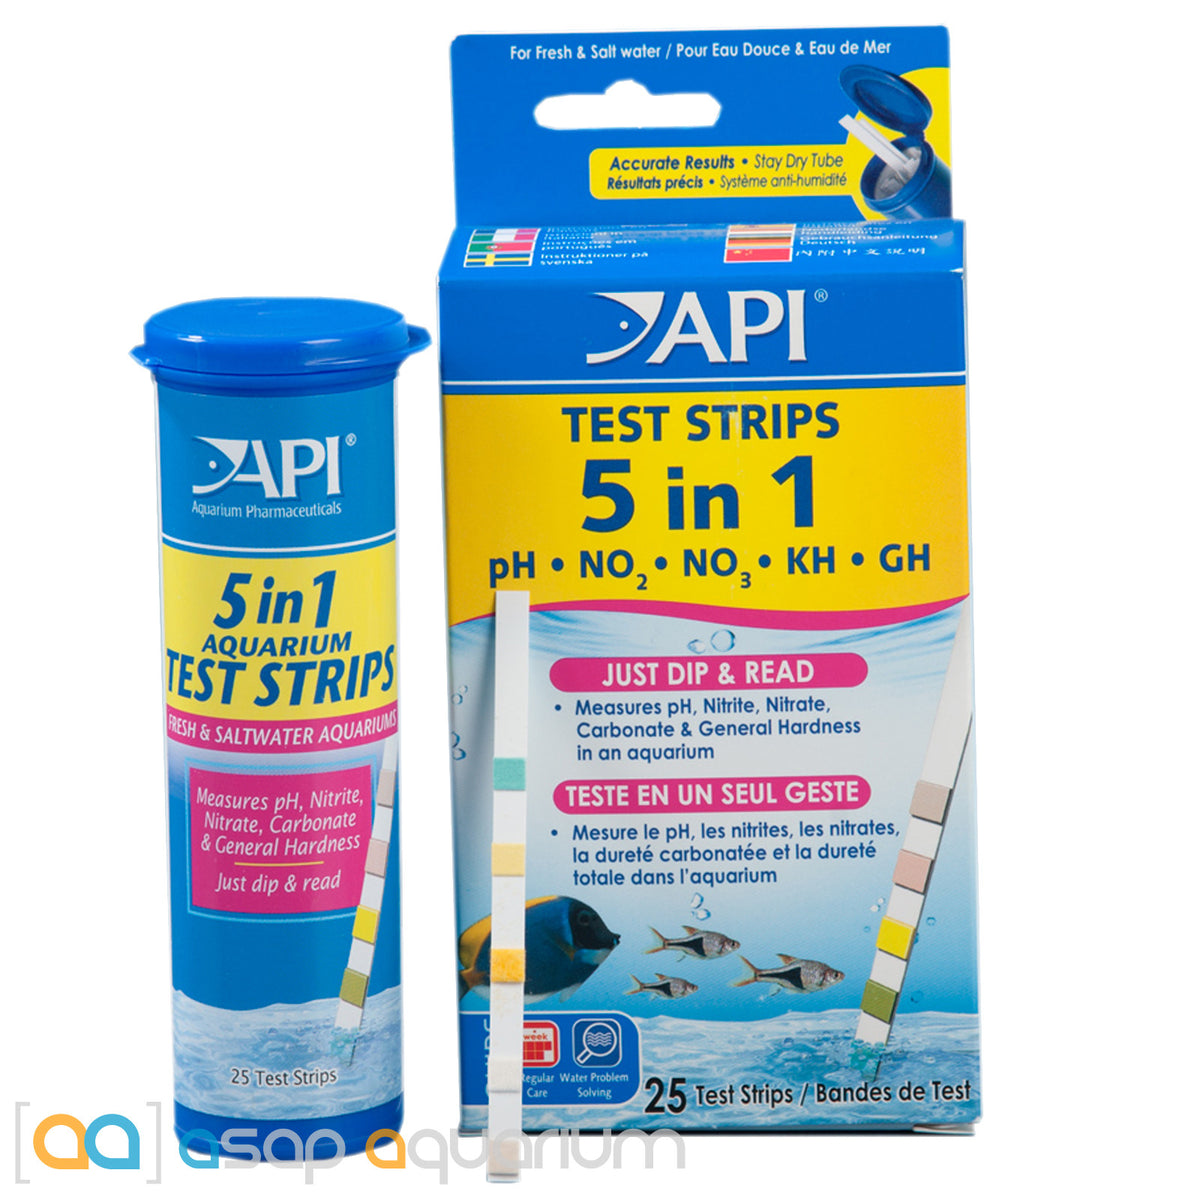 API 5 in 1 Aquarium Water Test Strips, 4 count